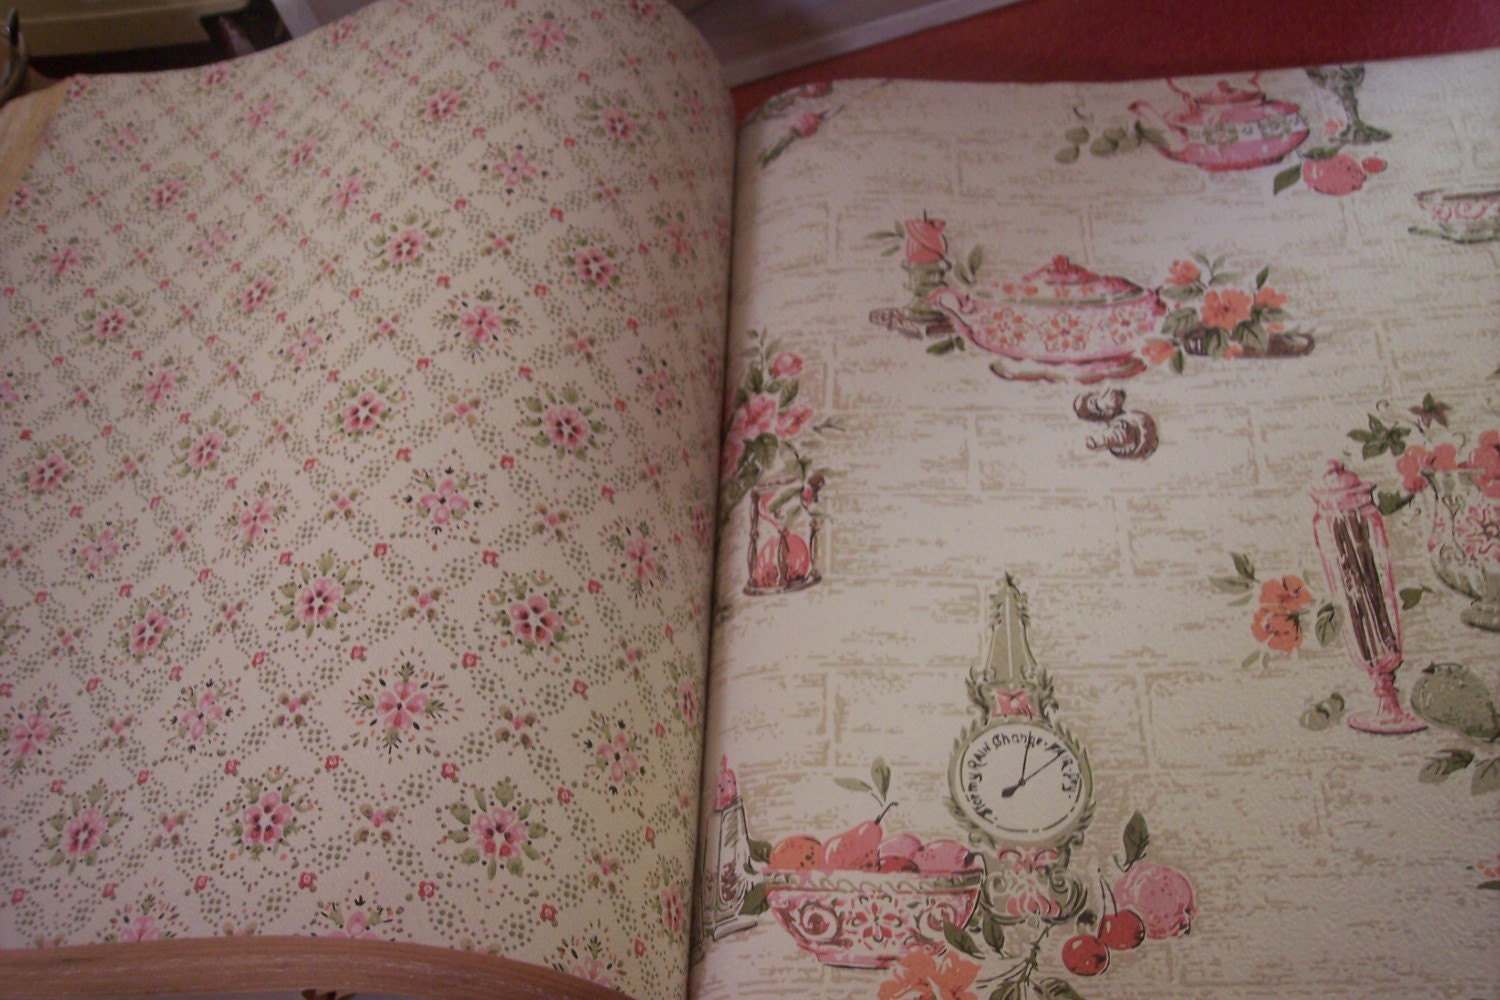  60s wallpaper sample book 